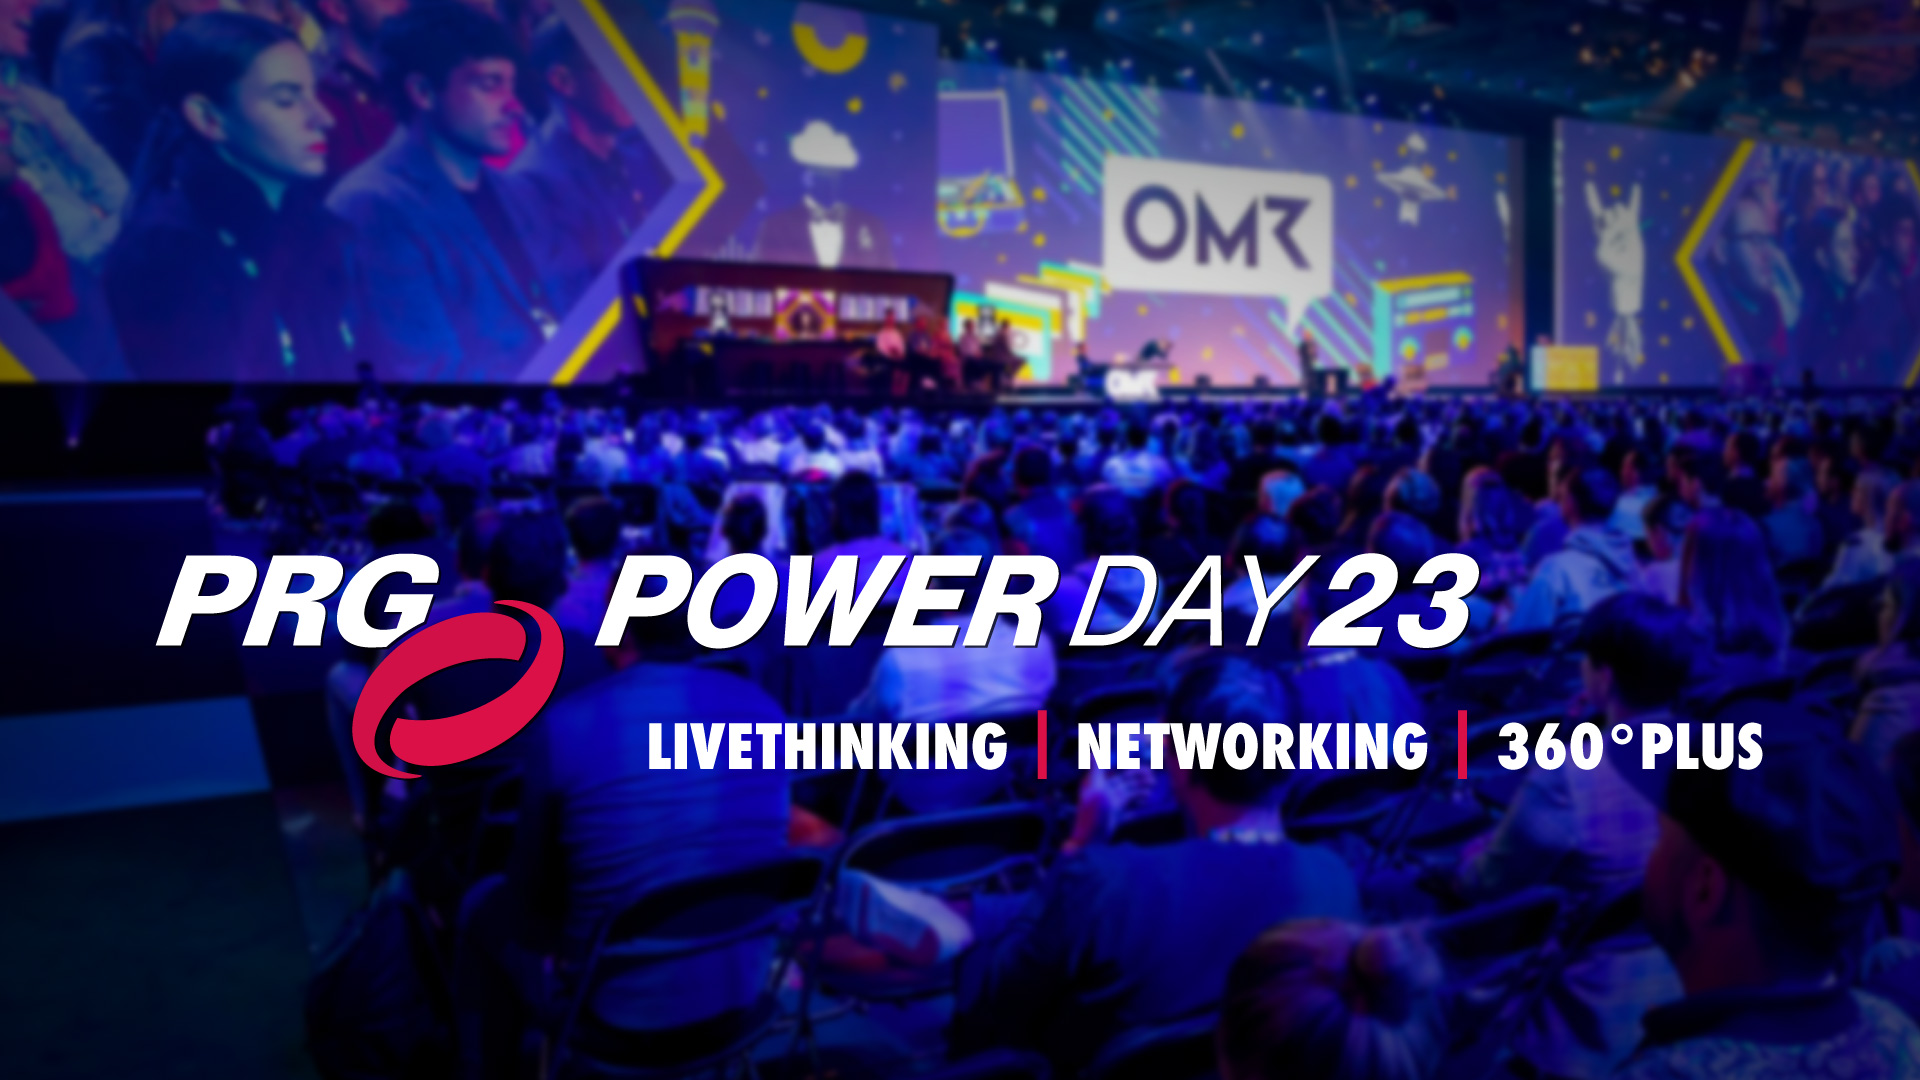 De eerste PRG Powerday 2023 vond plaats in Keulen op 19 juni 2023 en inspireerde gasten met een divers programma rond livethinking, netwerken en 360° Plus.